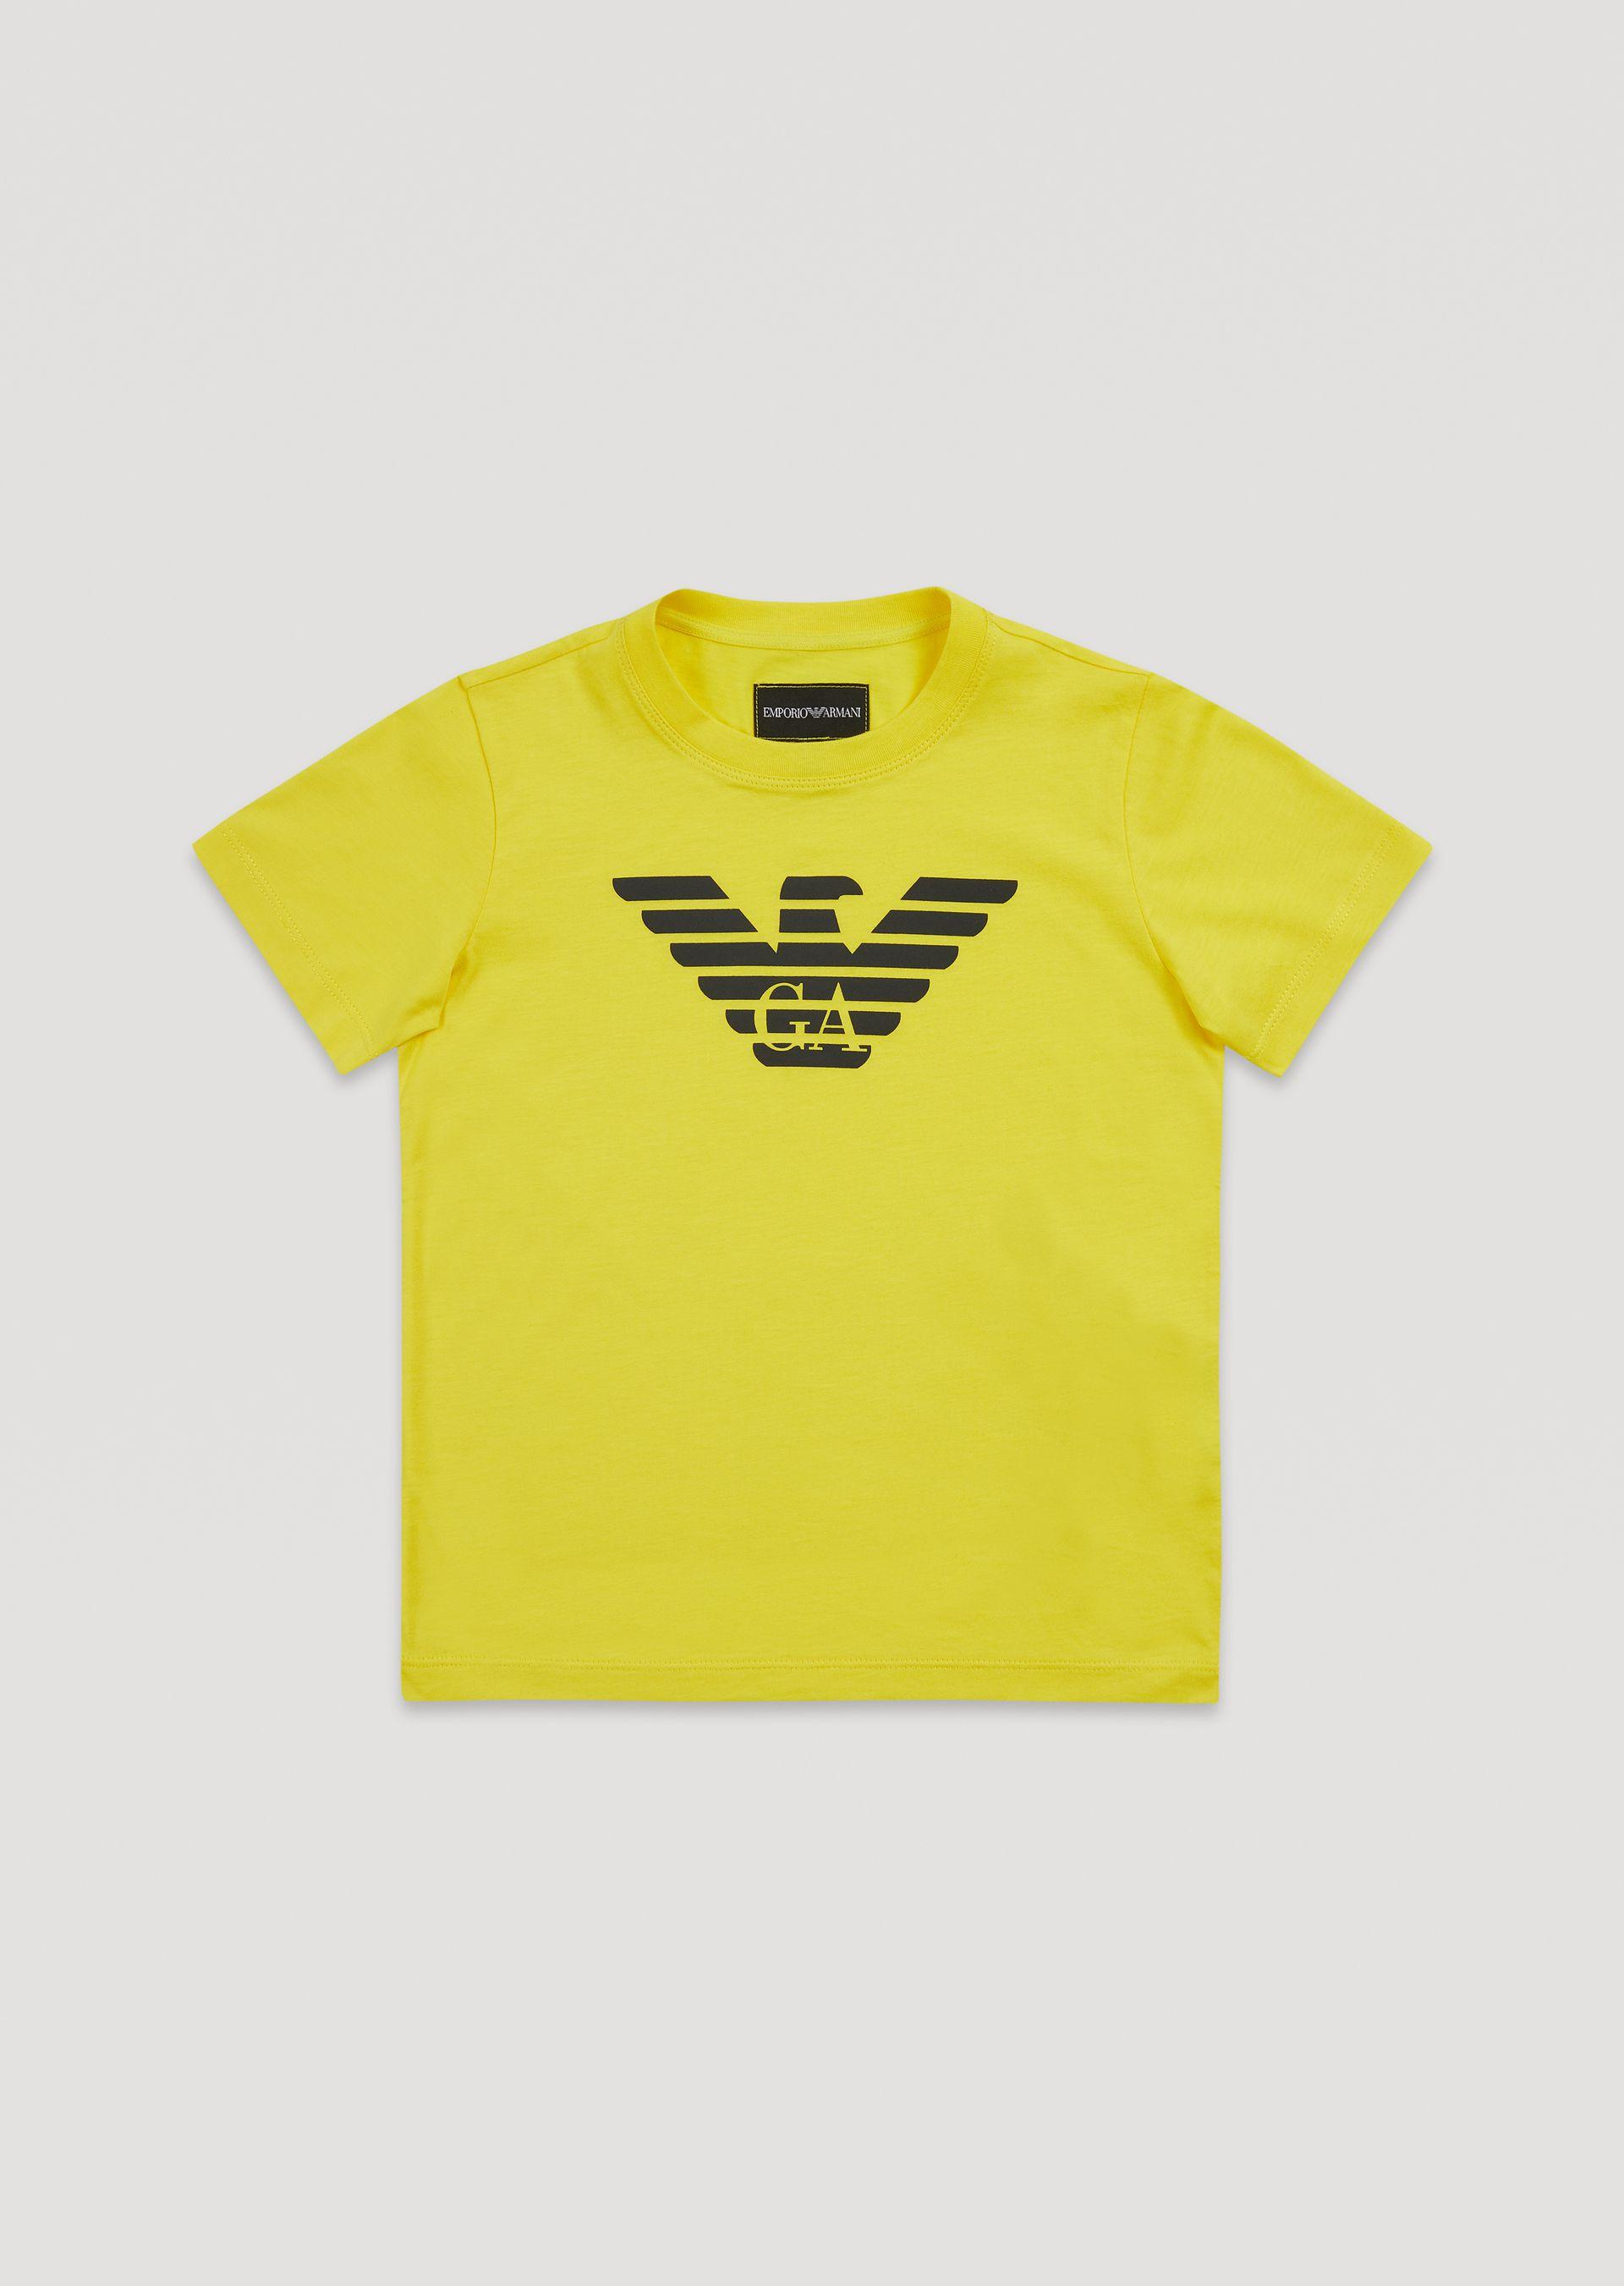 yellow armani t shirt